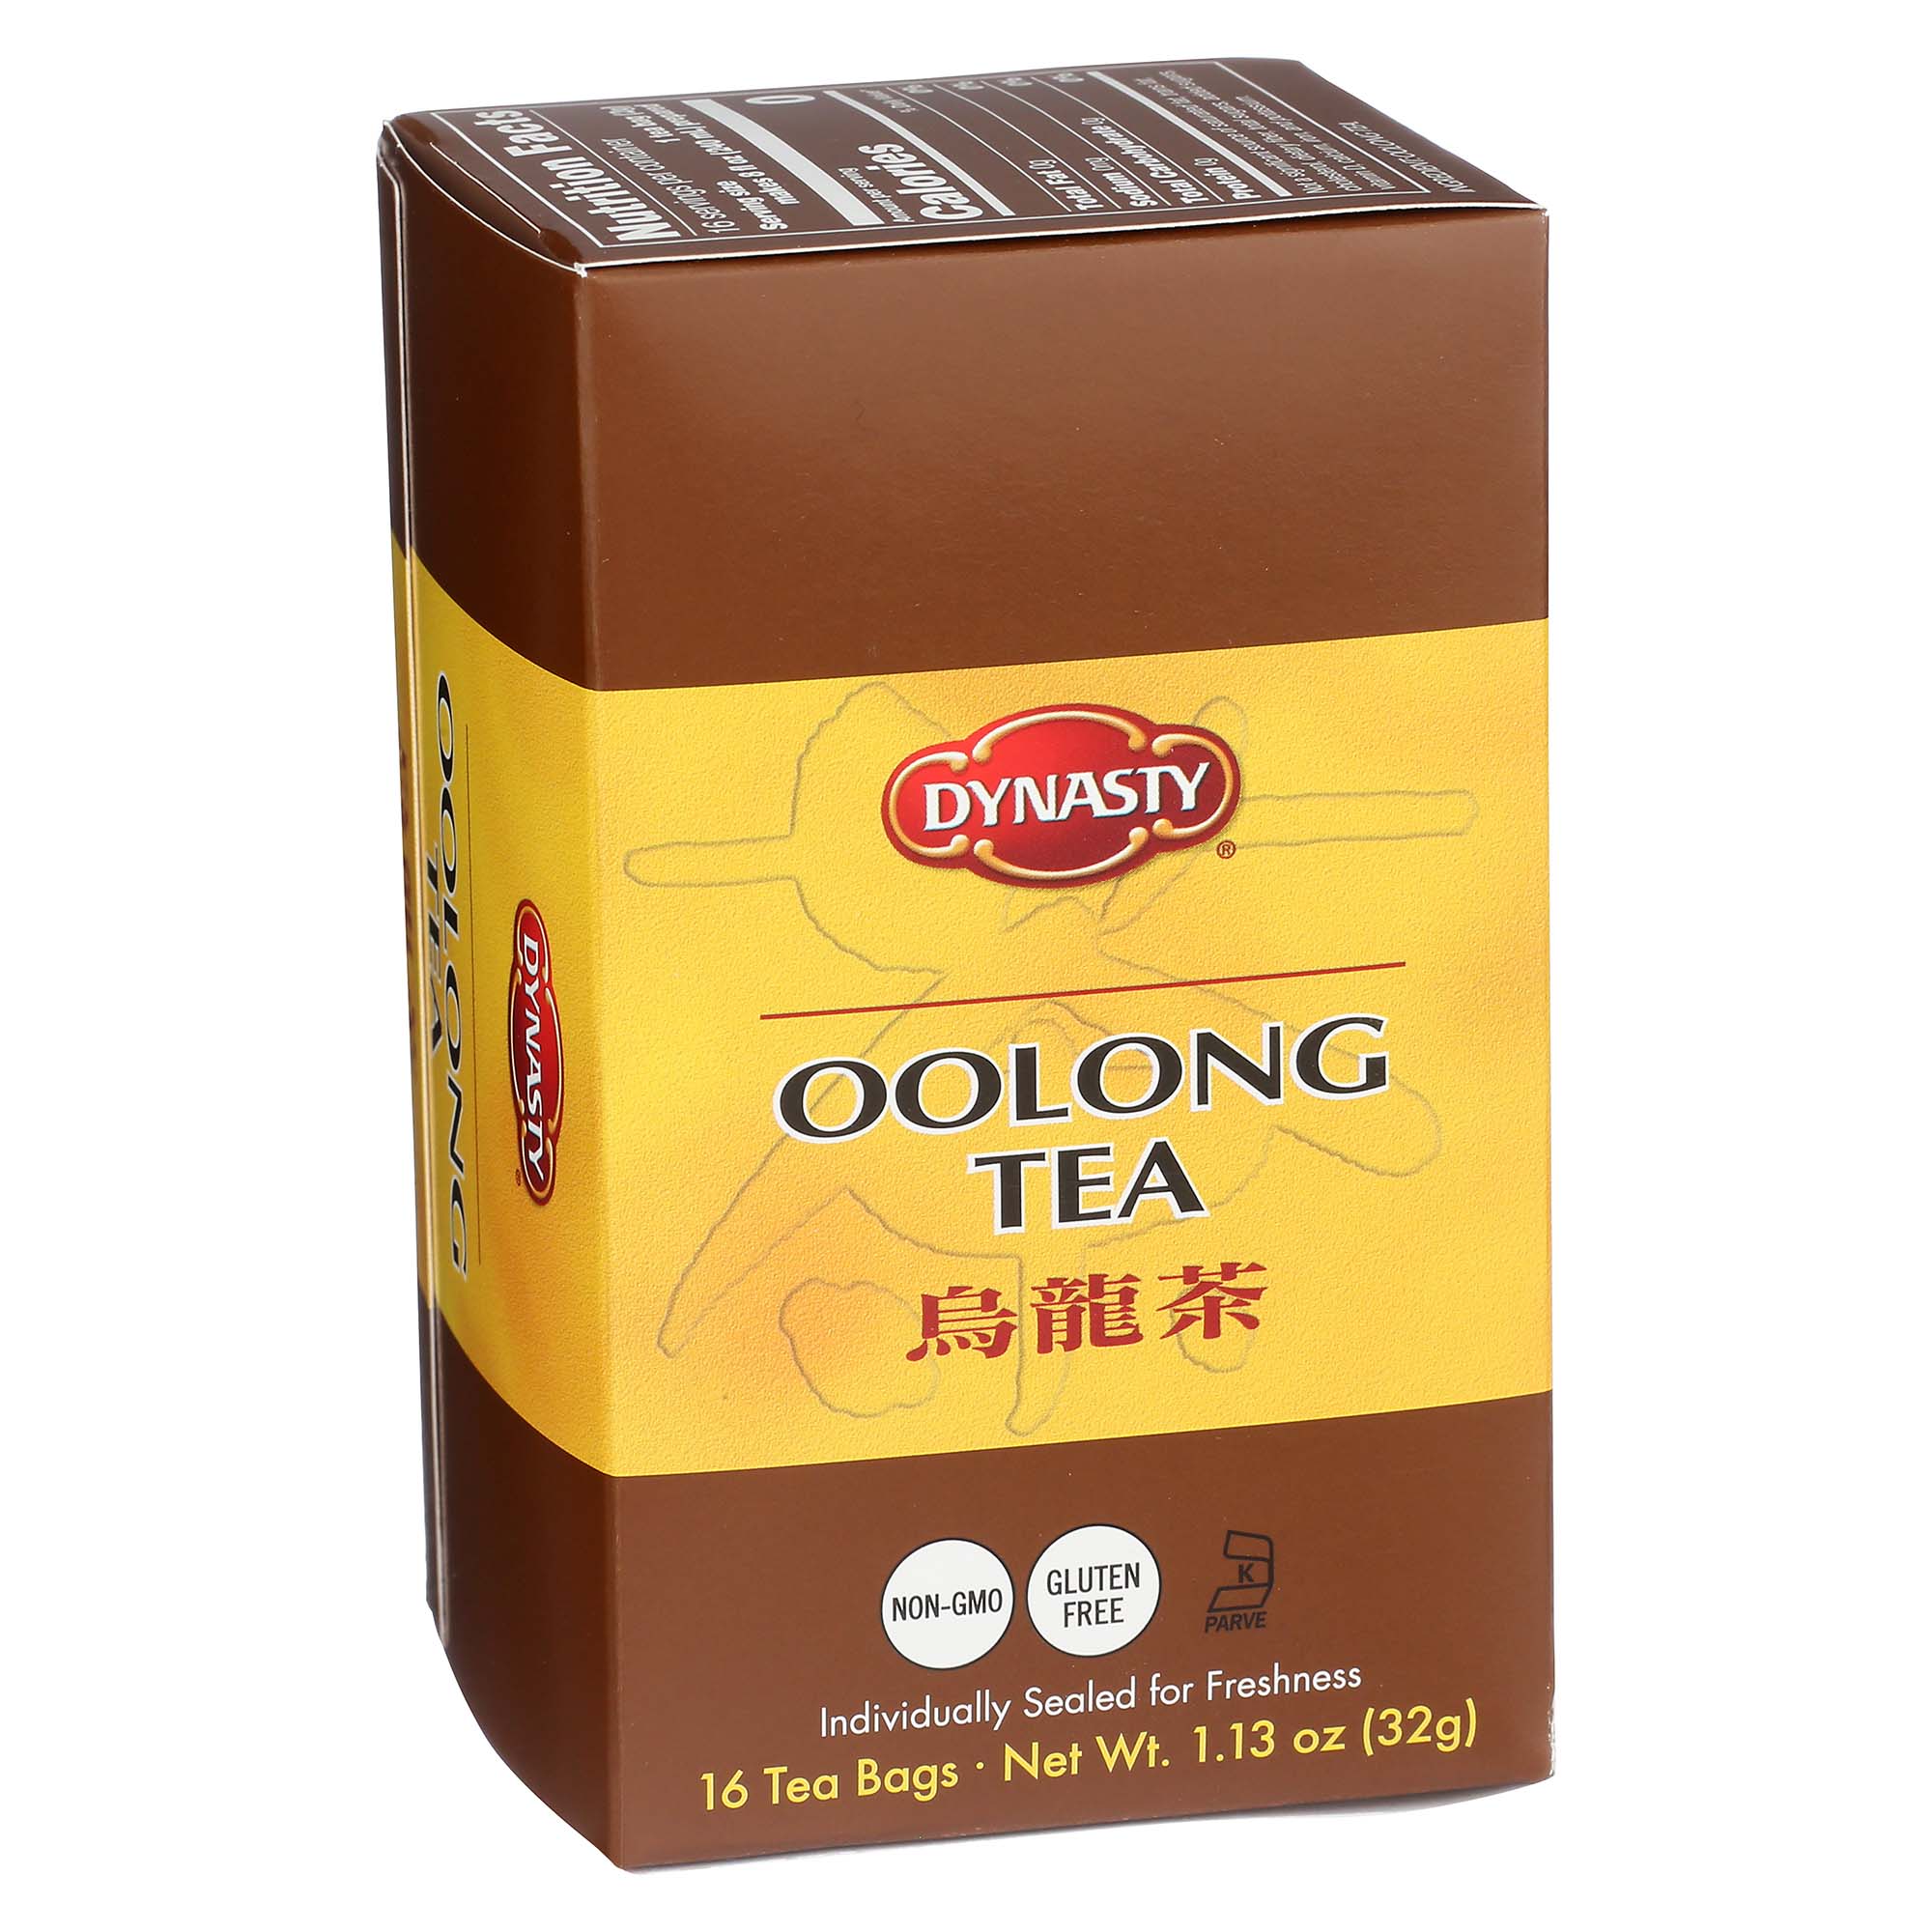 DYNASTY OOLONG TEA TEABAG            6/16 BAG